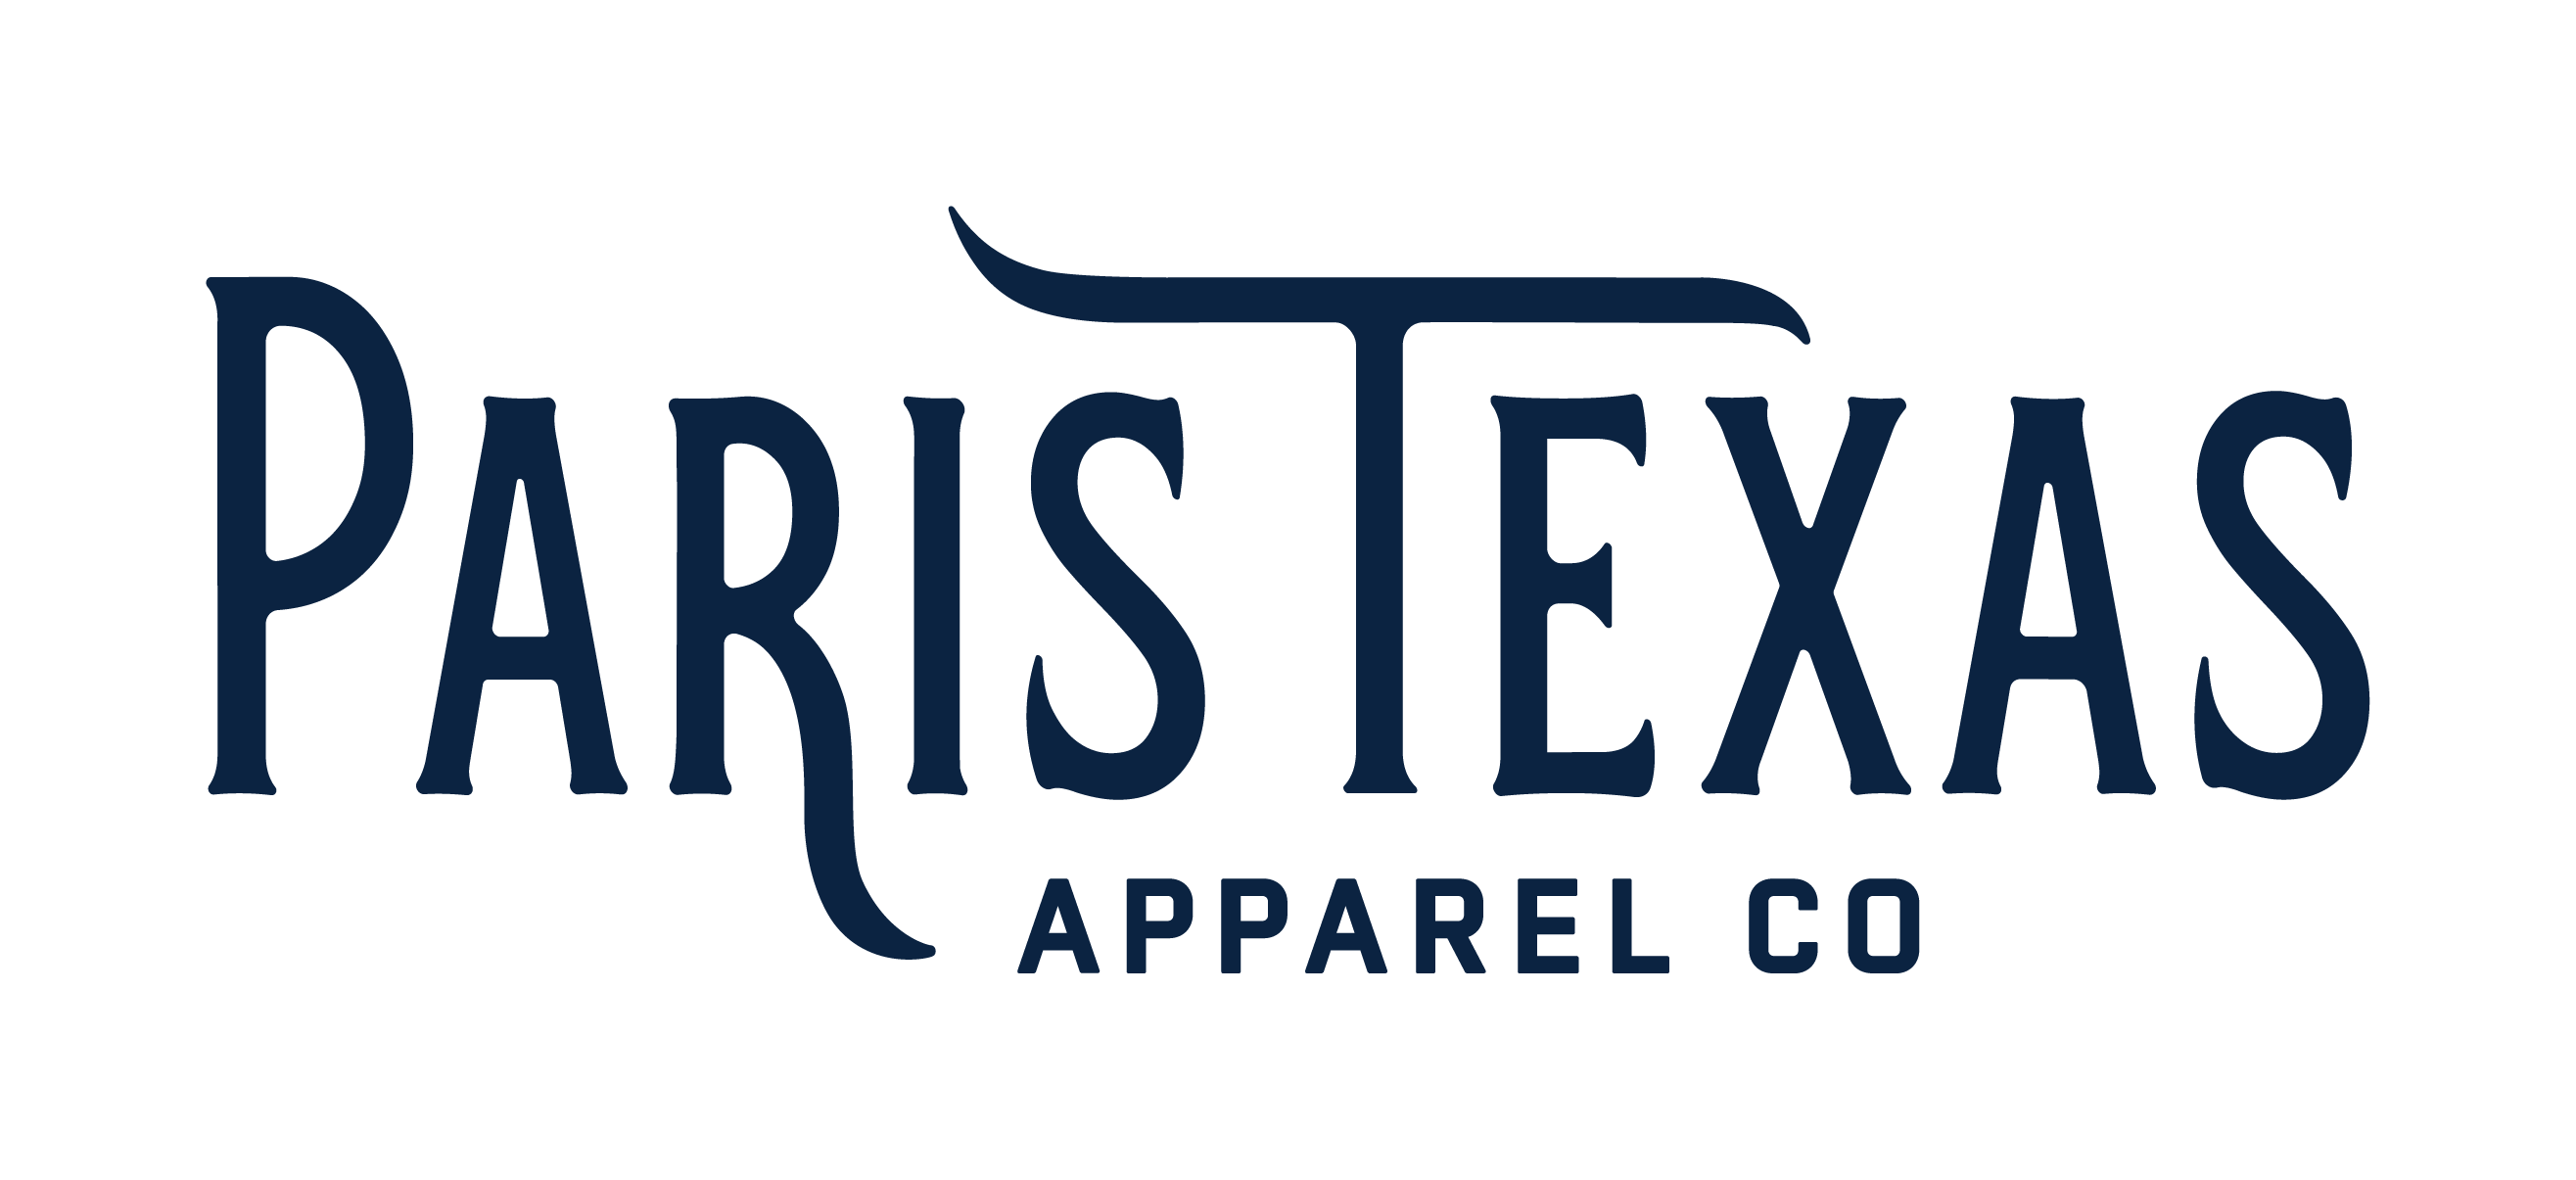 Houston Astros 2022 World Series Needlepoint Bifold Wallet – Paris Texas  Apparel Co